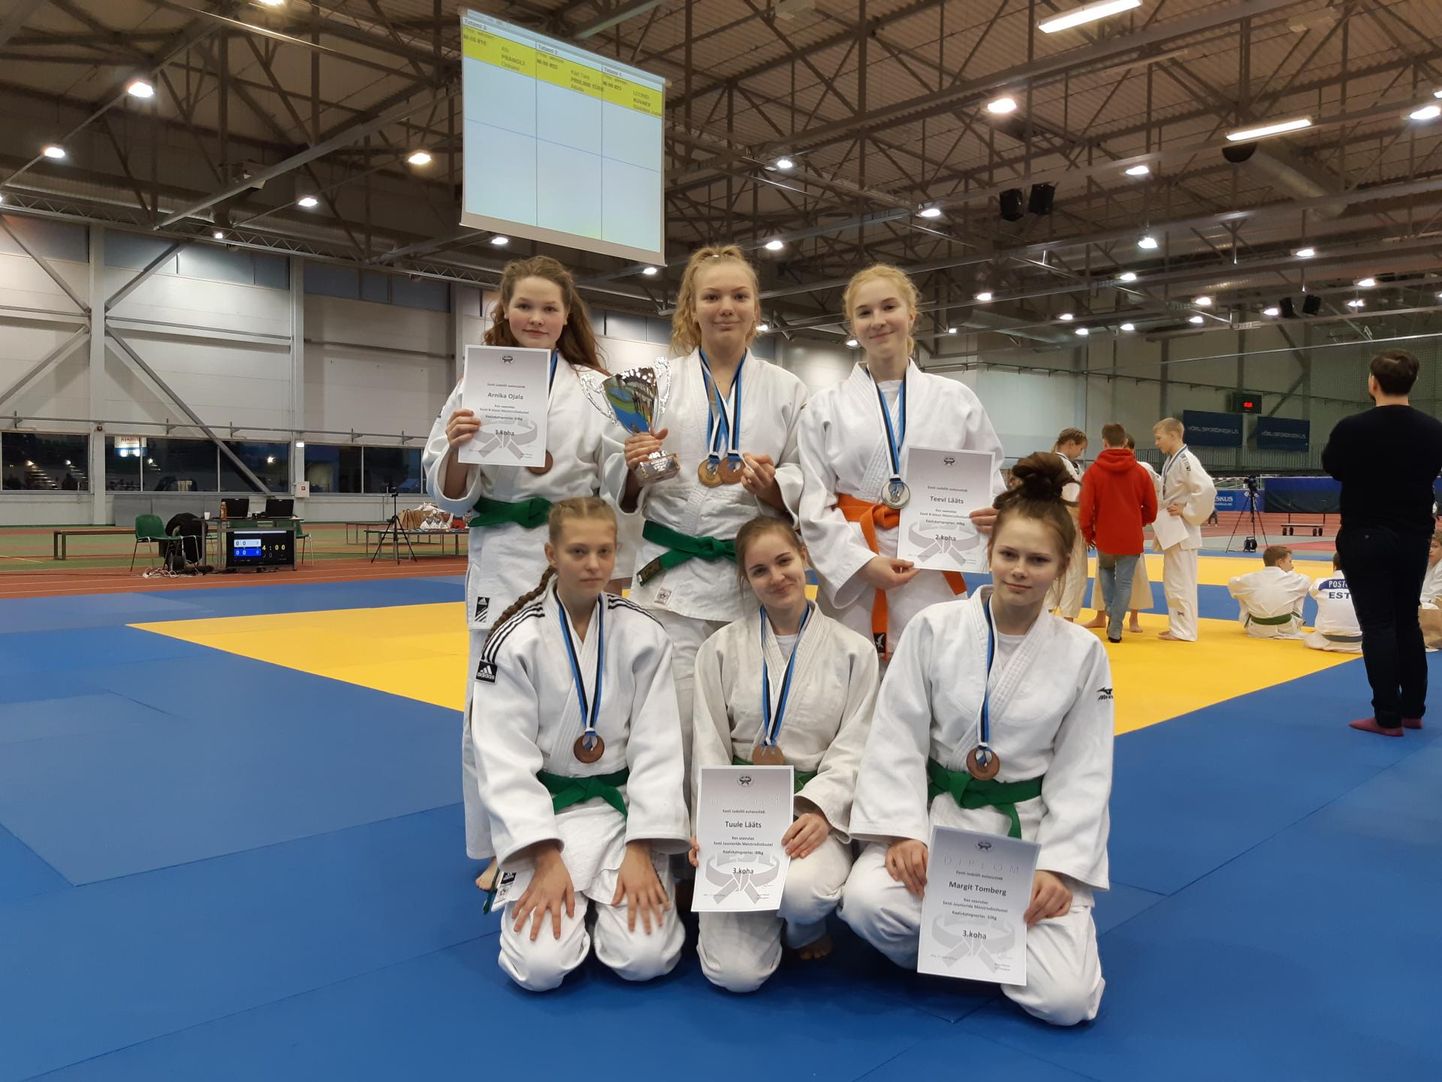 Pärnu judoklubi Samurai oli esindatud viiteistkümne ja Audru Aitado kuue judokaga.